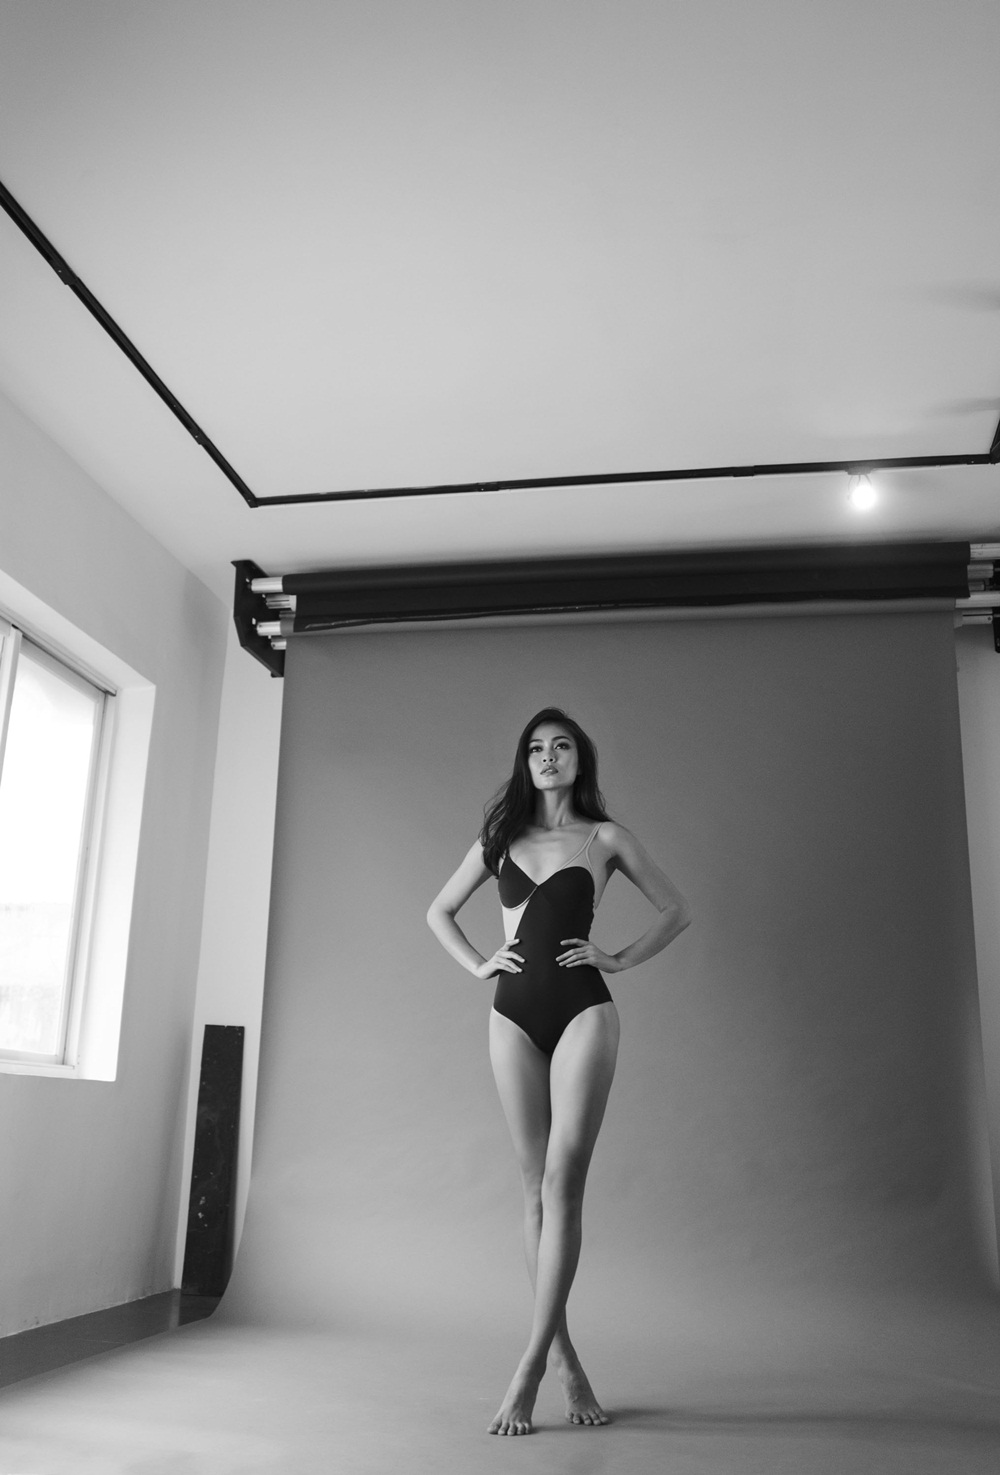 Mâu Thanh Thủy khoe thân hình 'nóng bỏng' trong bộ ảnh bikini mới